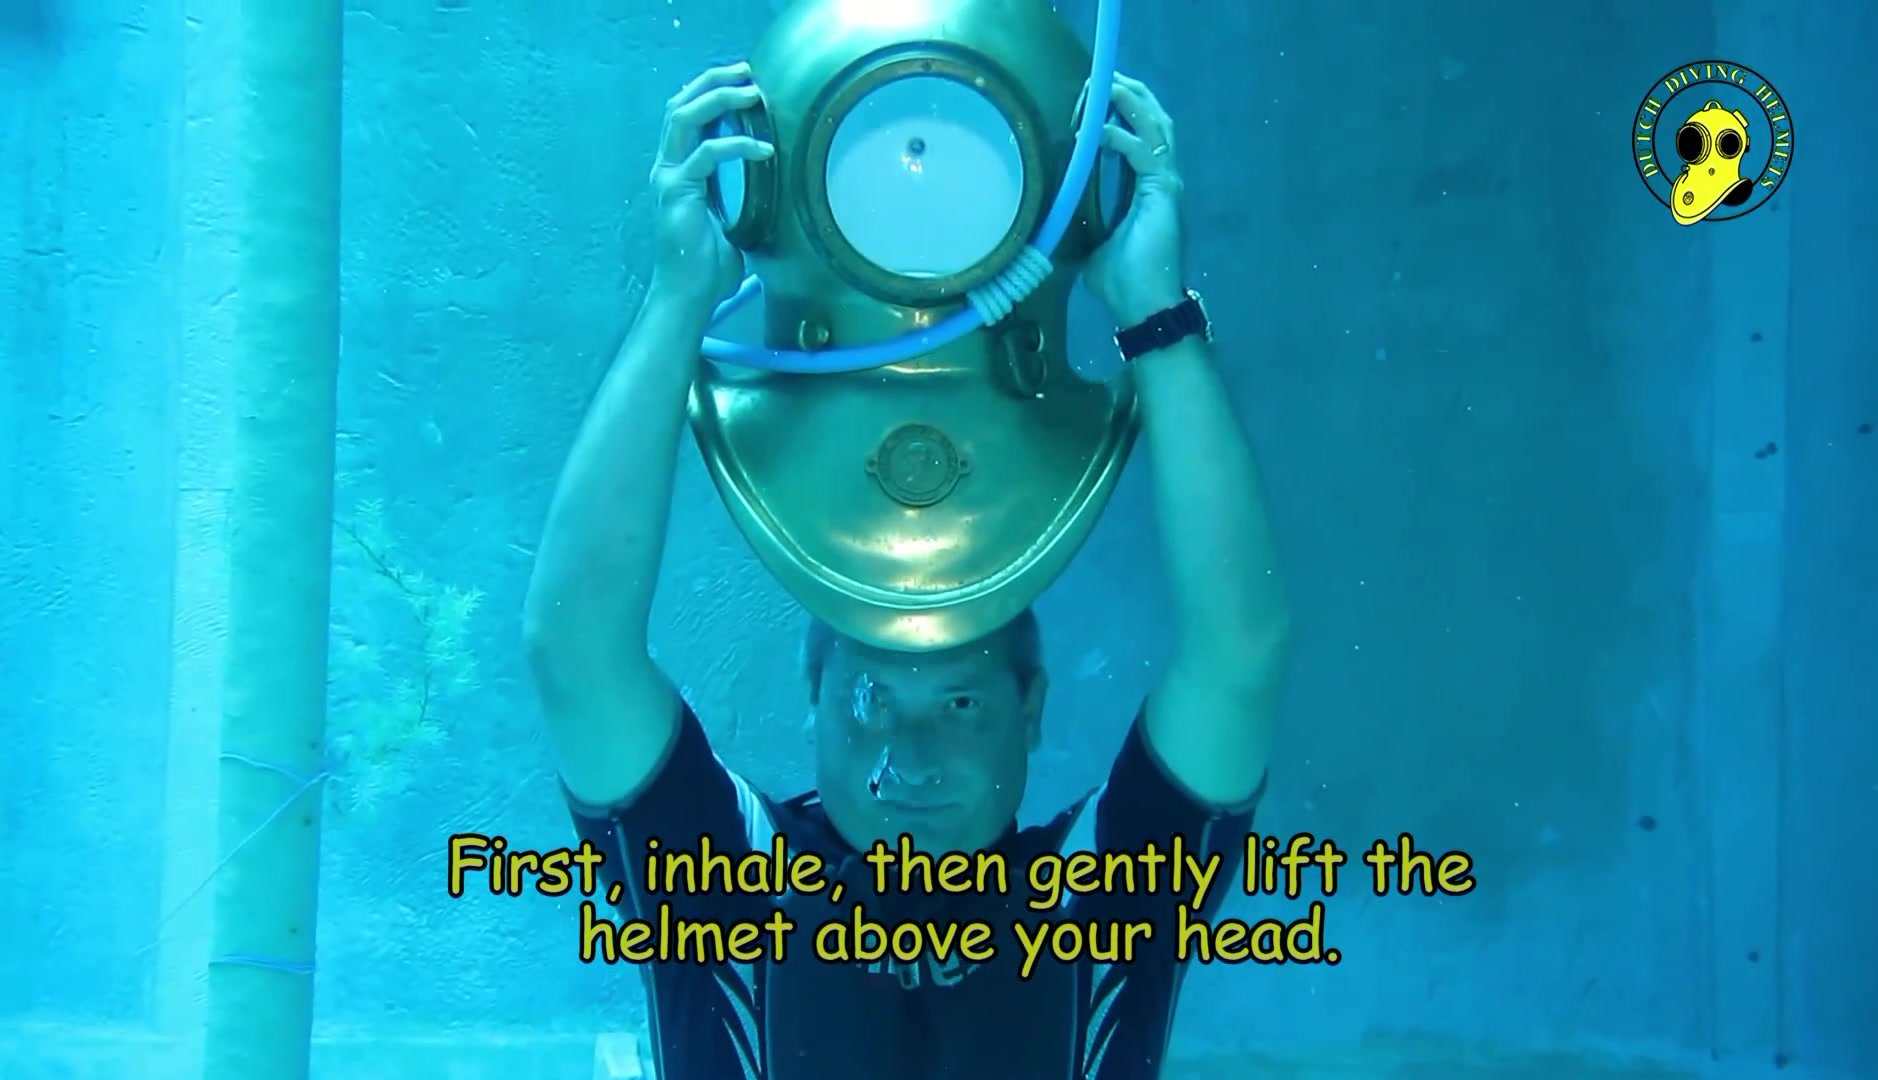 Frank showing helmet diving skills underwater